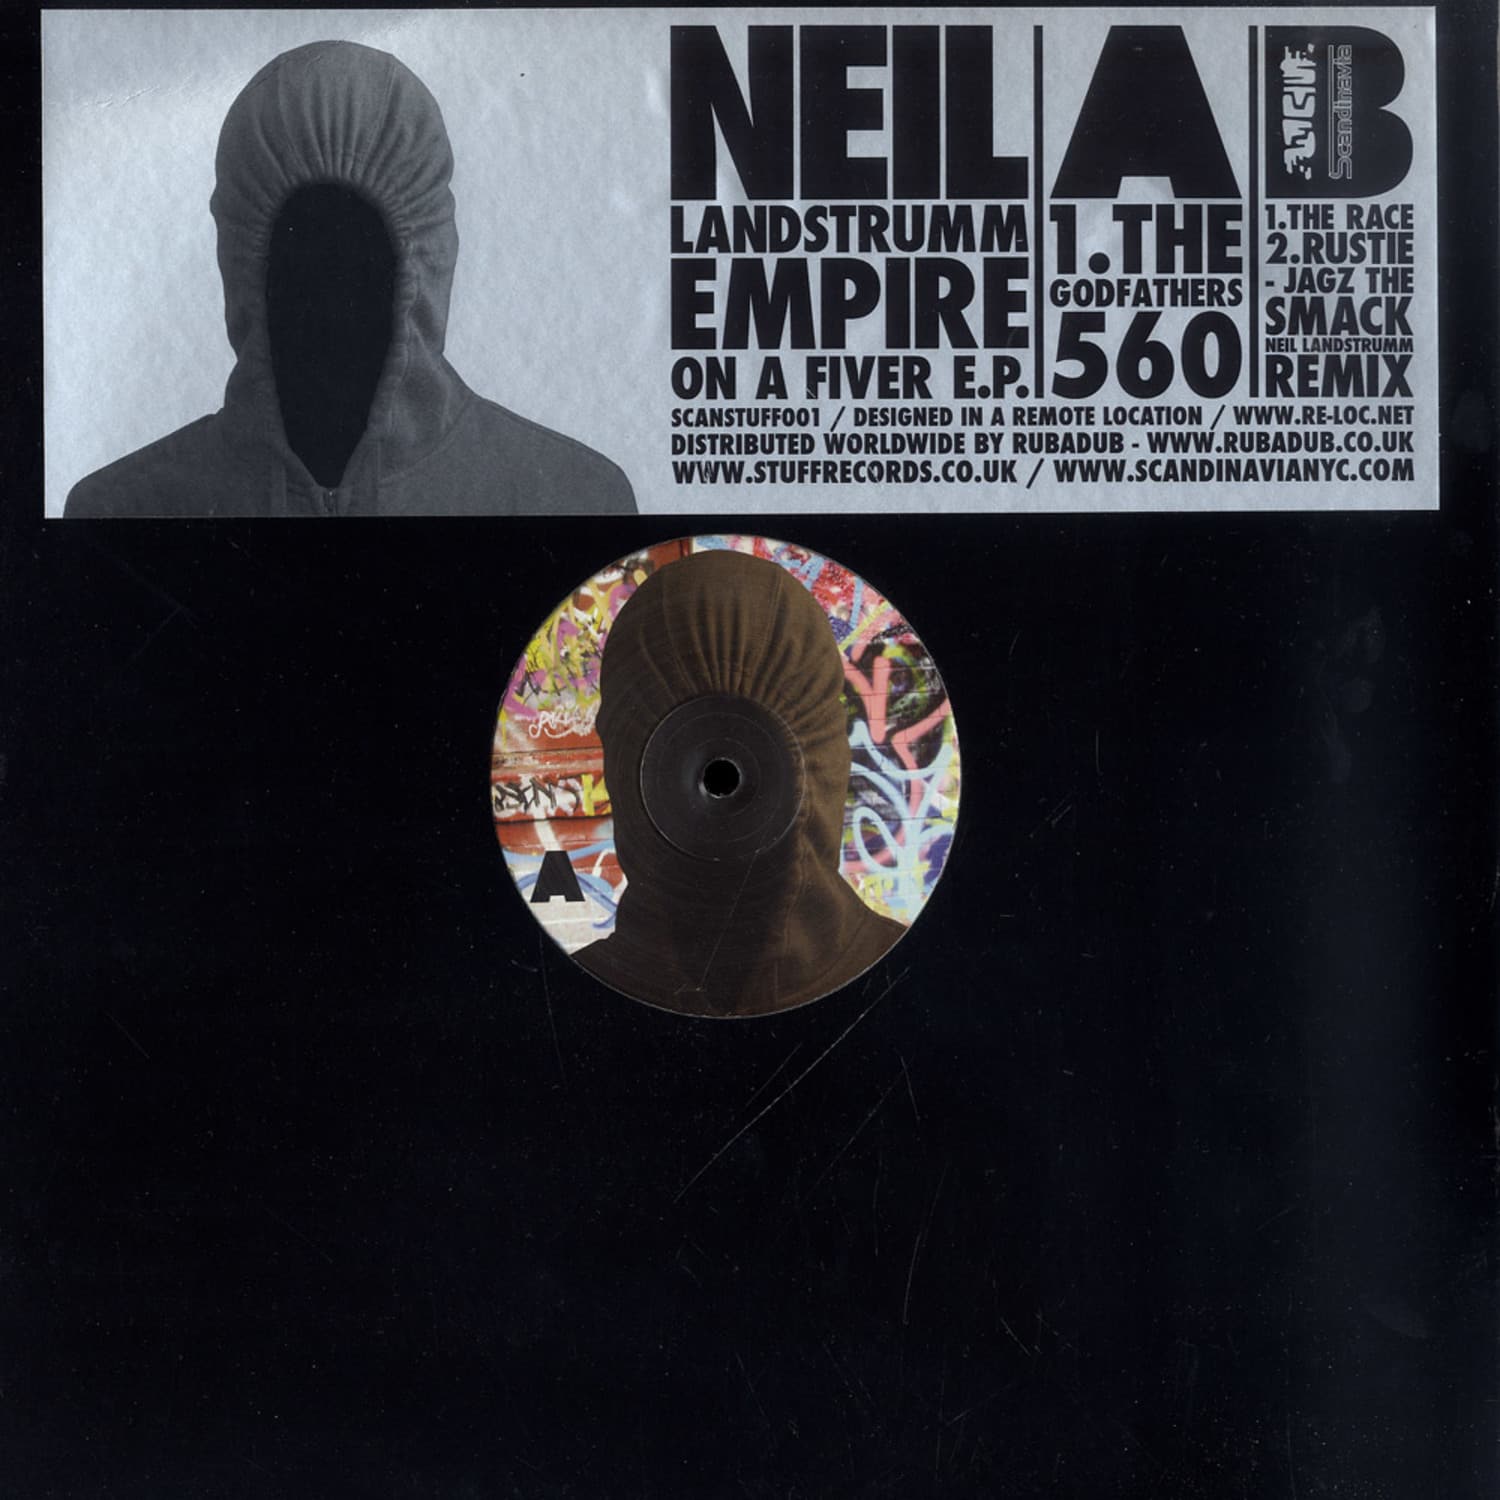 Neil Landstrumm - EMPIRE ON A FIVER EP